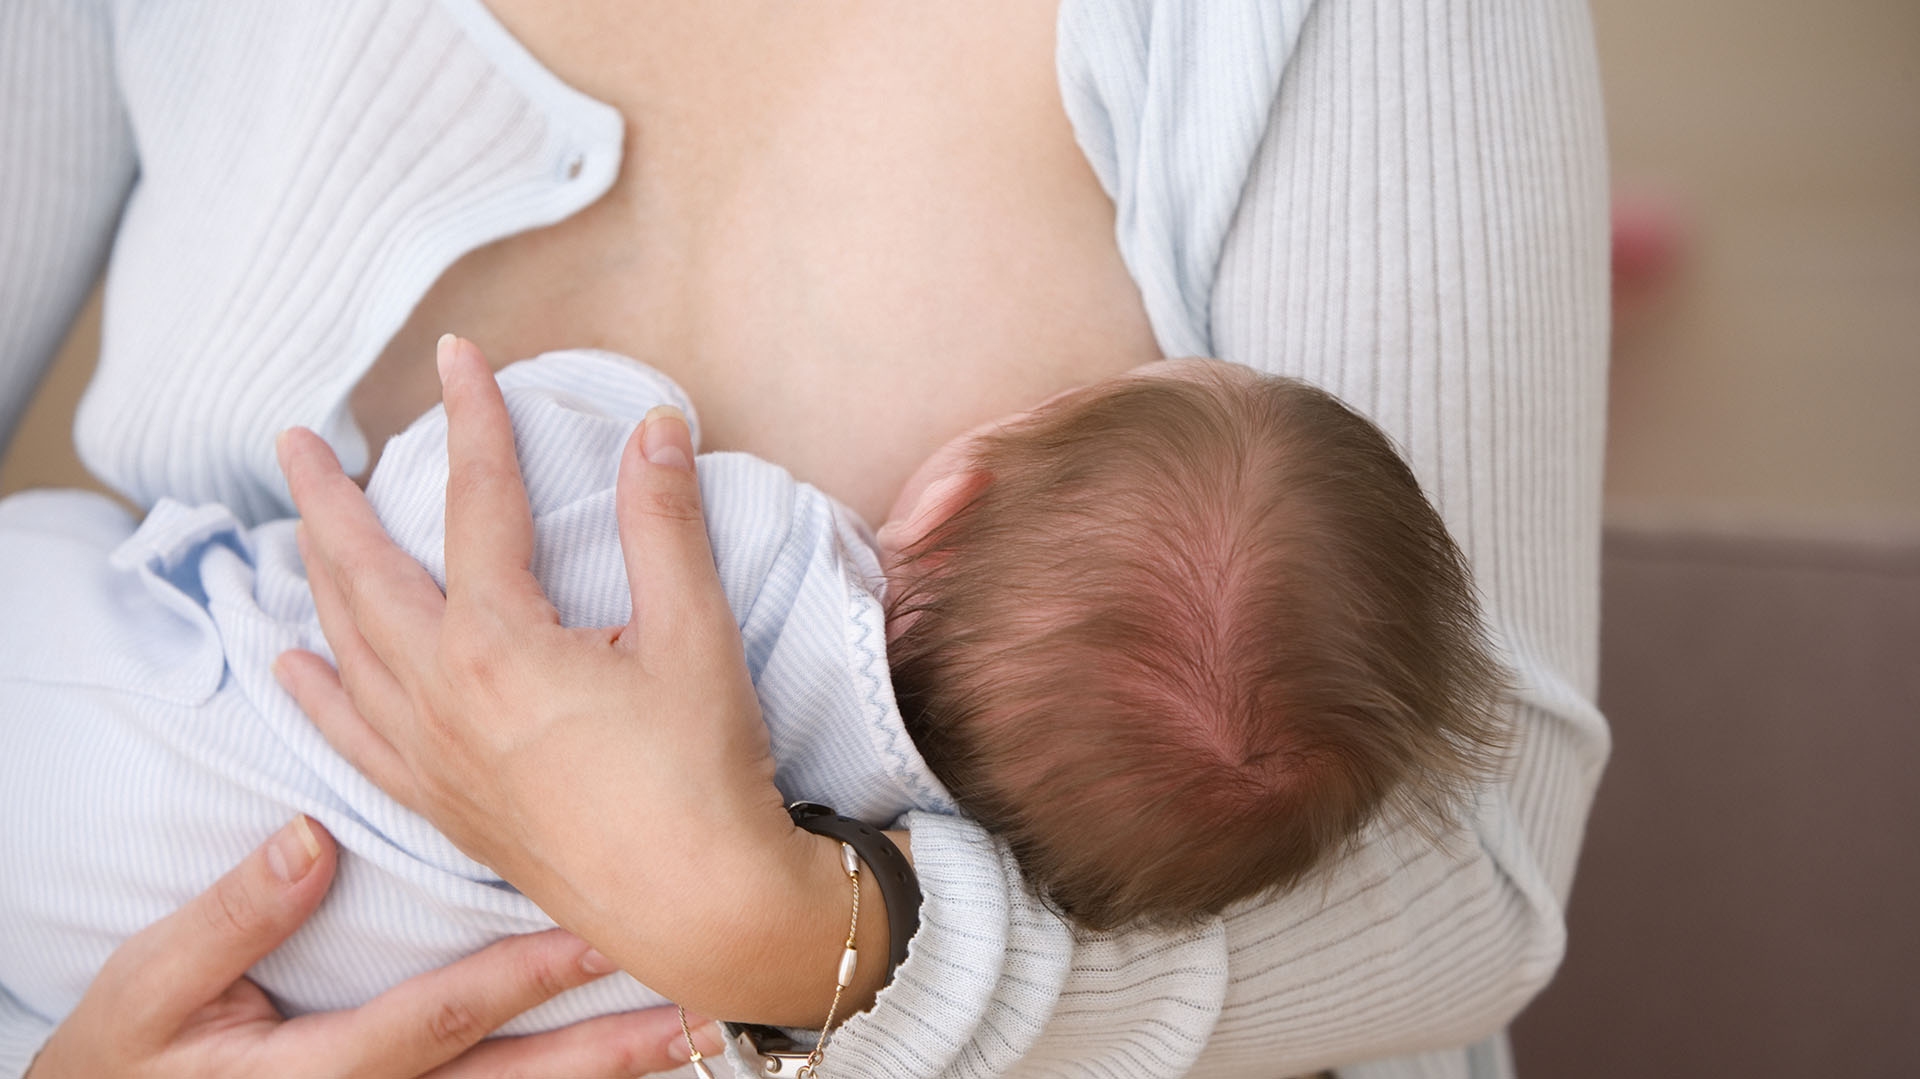 Para Cueto “recomendar a una madre que le dé de mamar a su hijo cada tres horas es desconocer que la lactancia debe ocurrir frente a las señales del bebé y de la madre, no por lo que indica un reloj" (Getty)